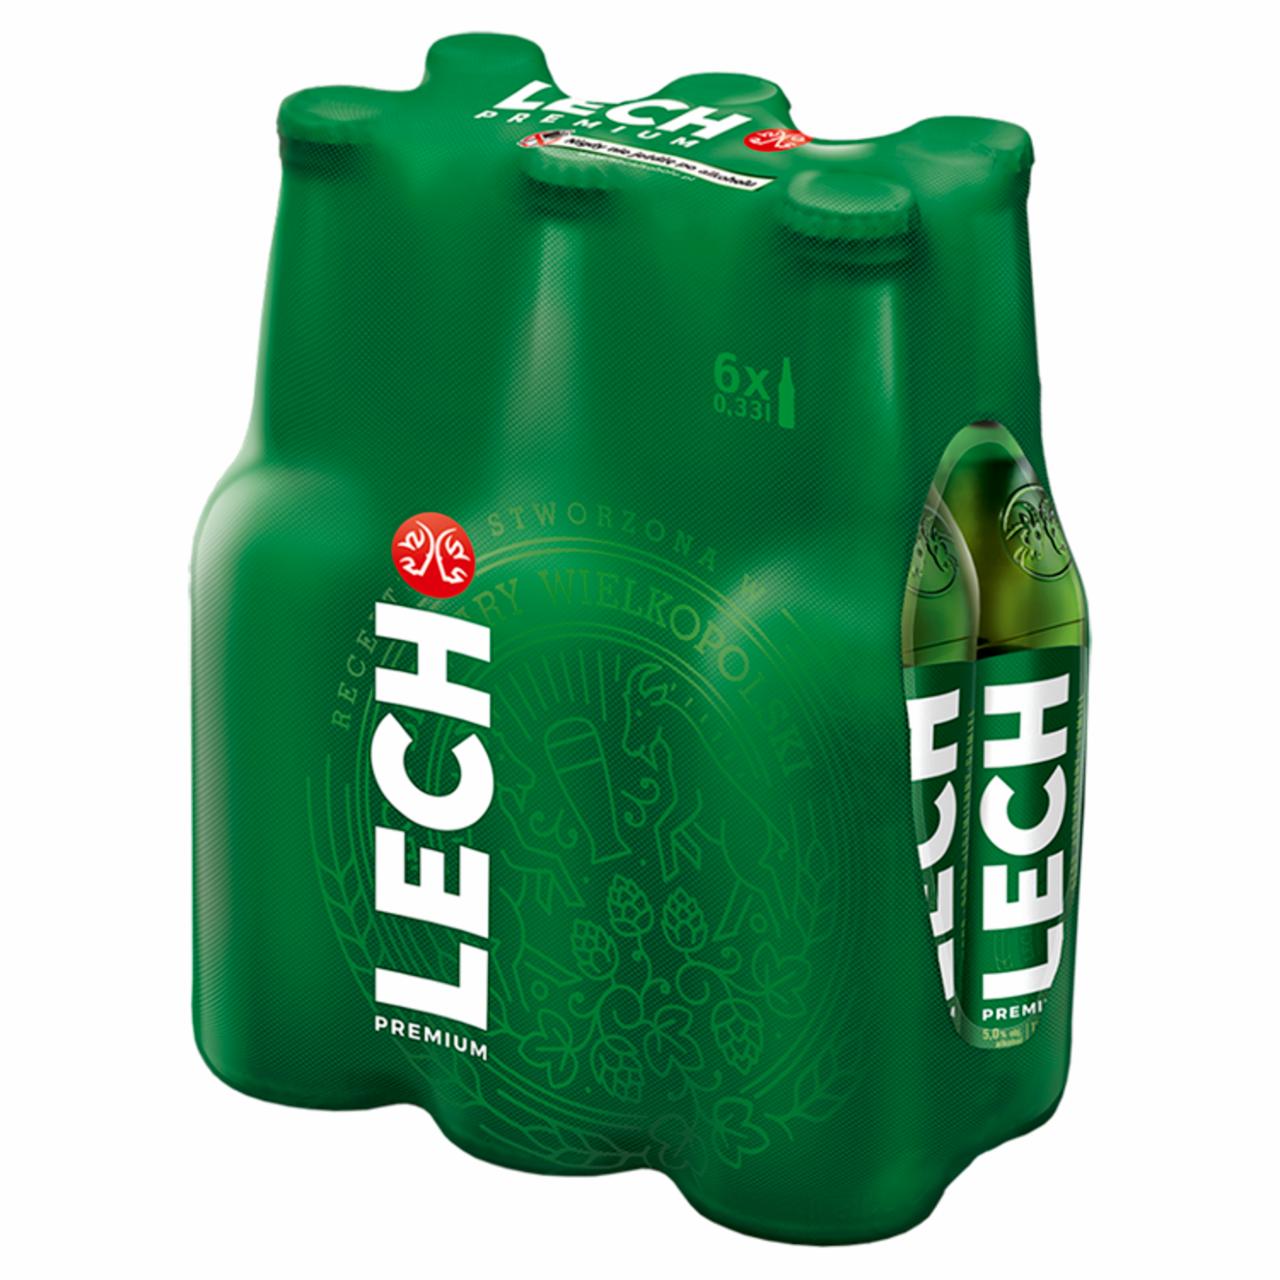 Zdjęcia - Lech Premium Piwo jasne 6 x 0,33 l